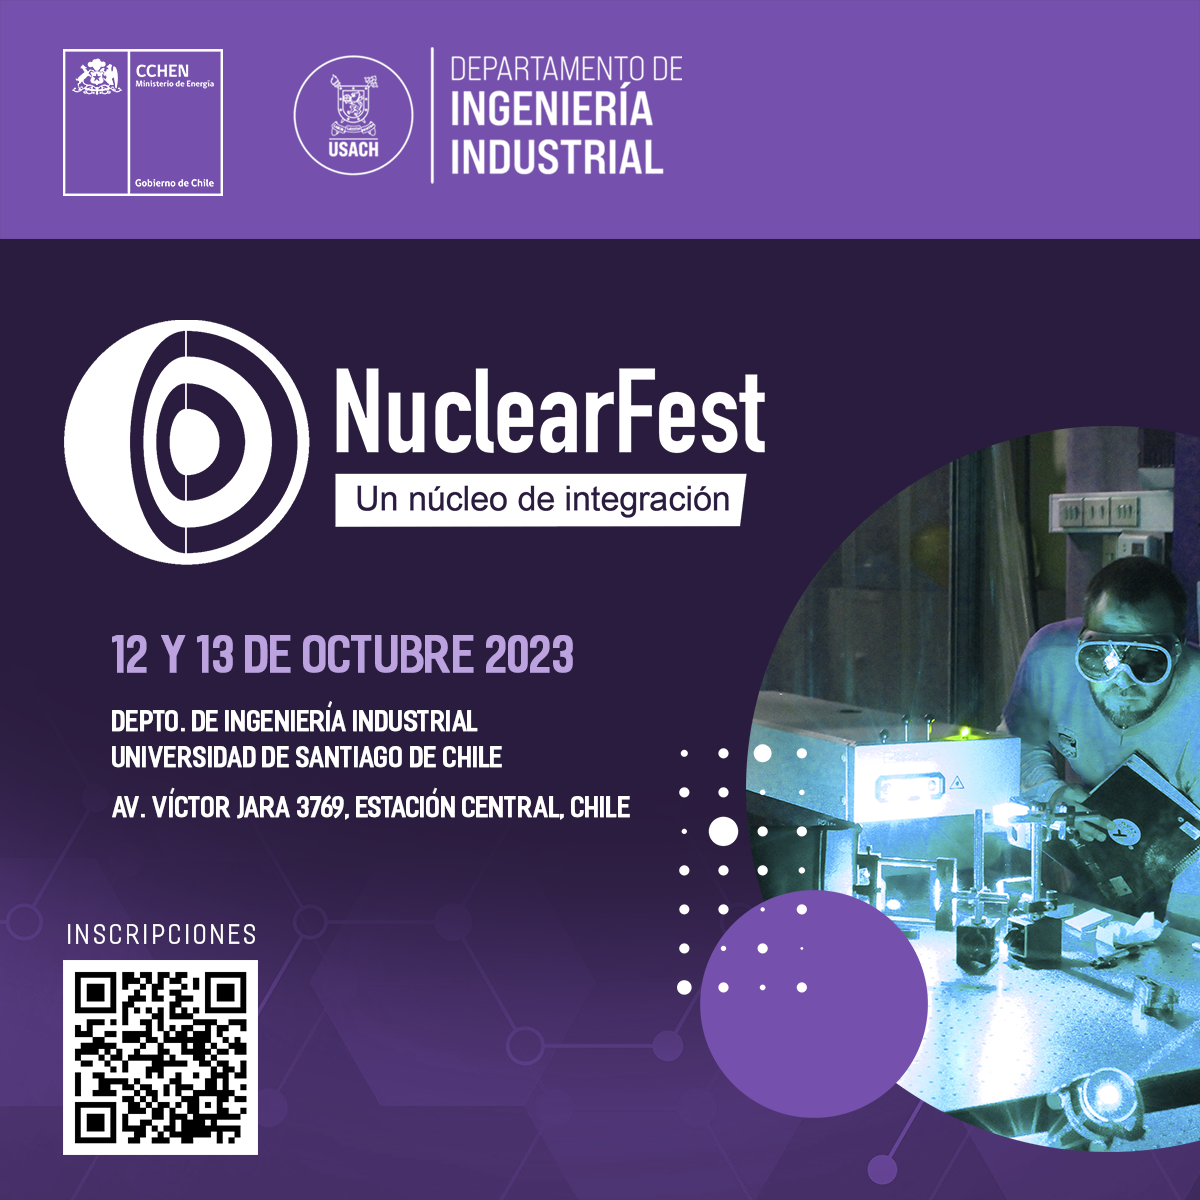 Departamento de Ingeniería Industrial reunirá a la comunidad de energía nuclear de Chile en inédito evento